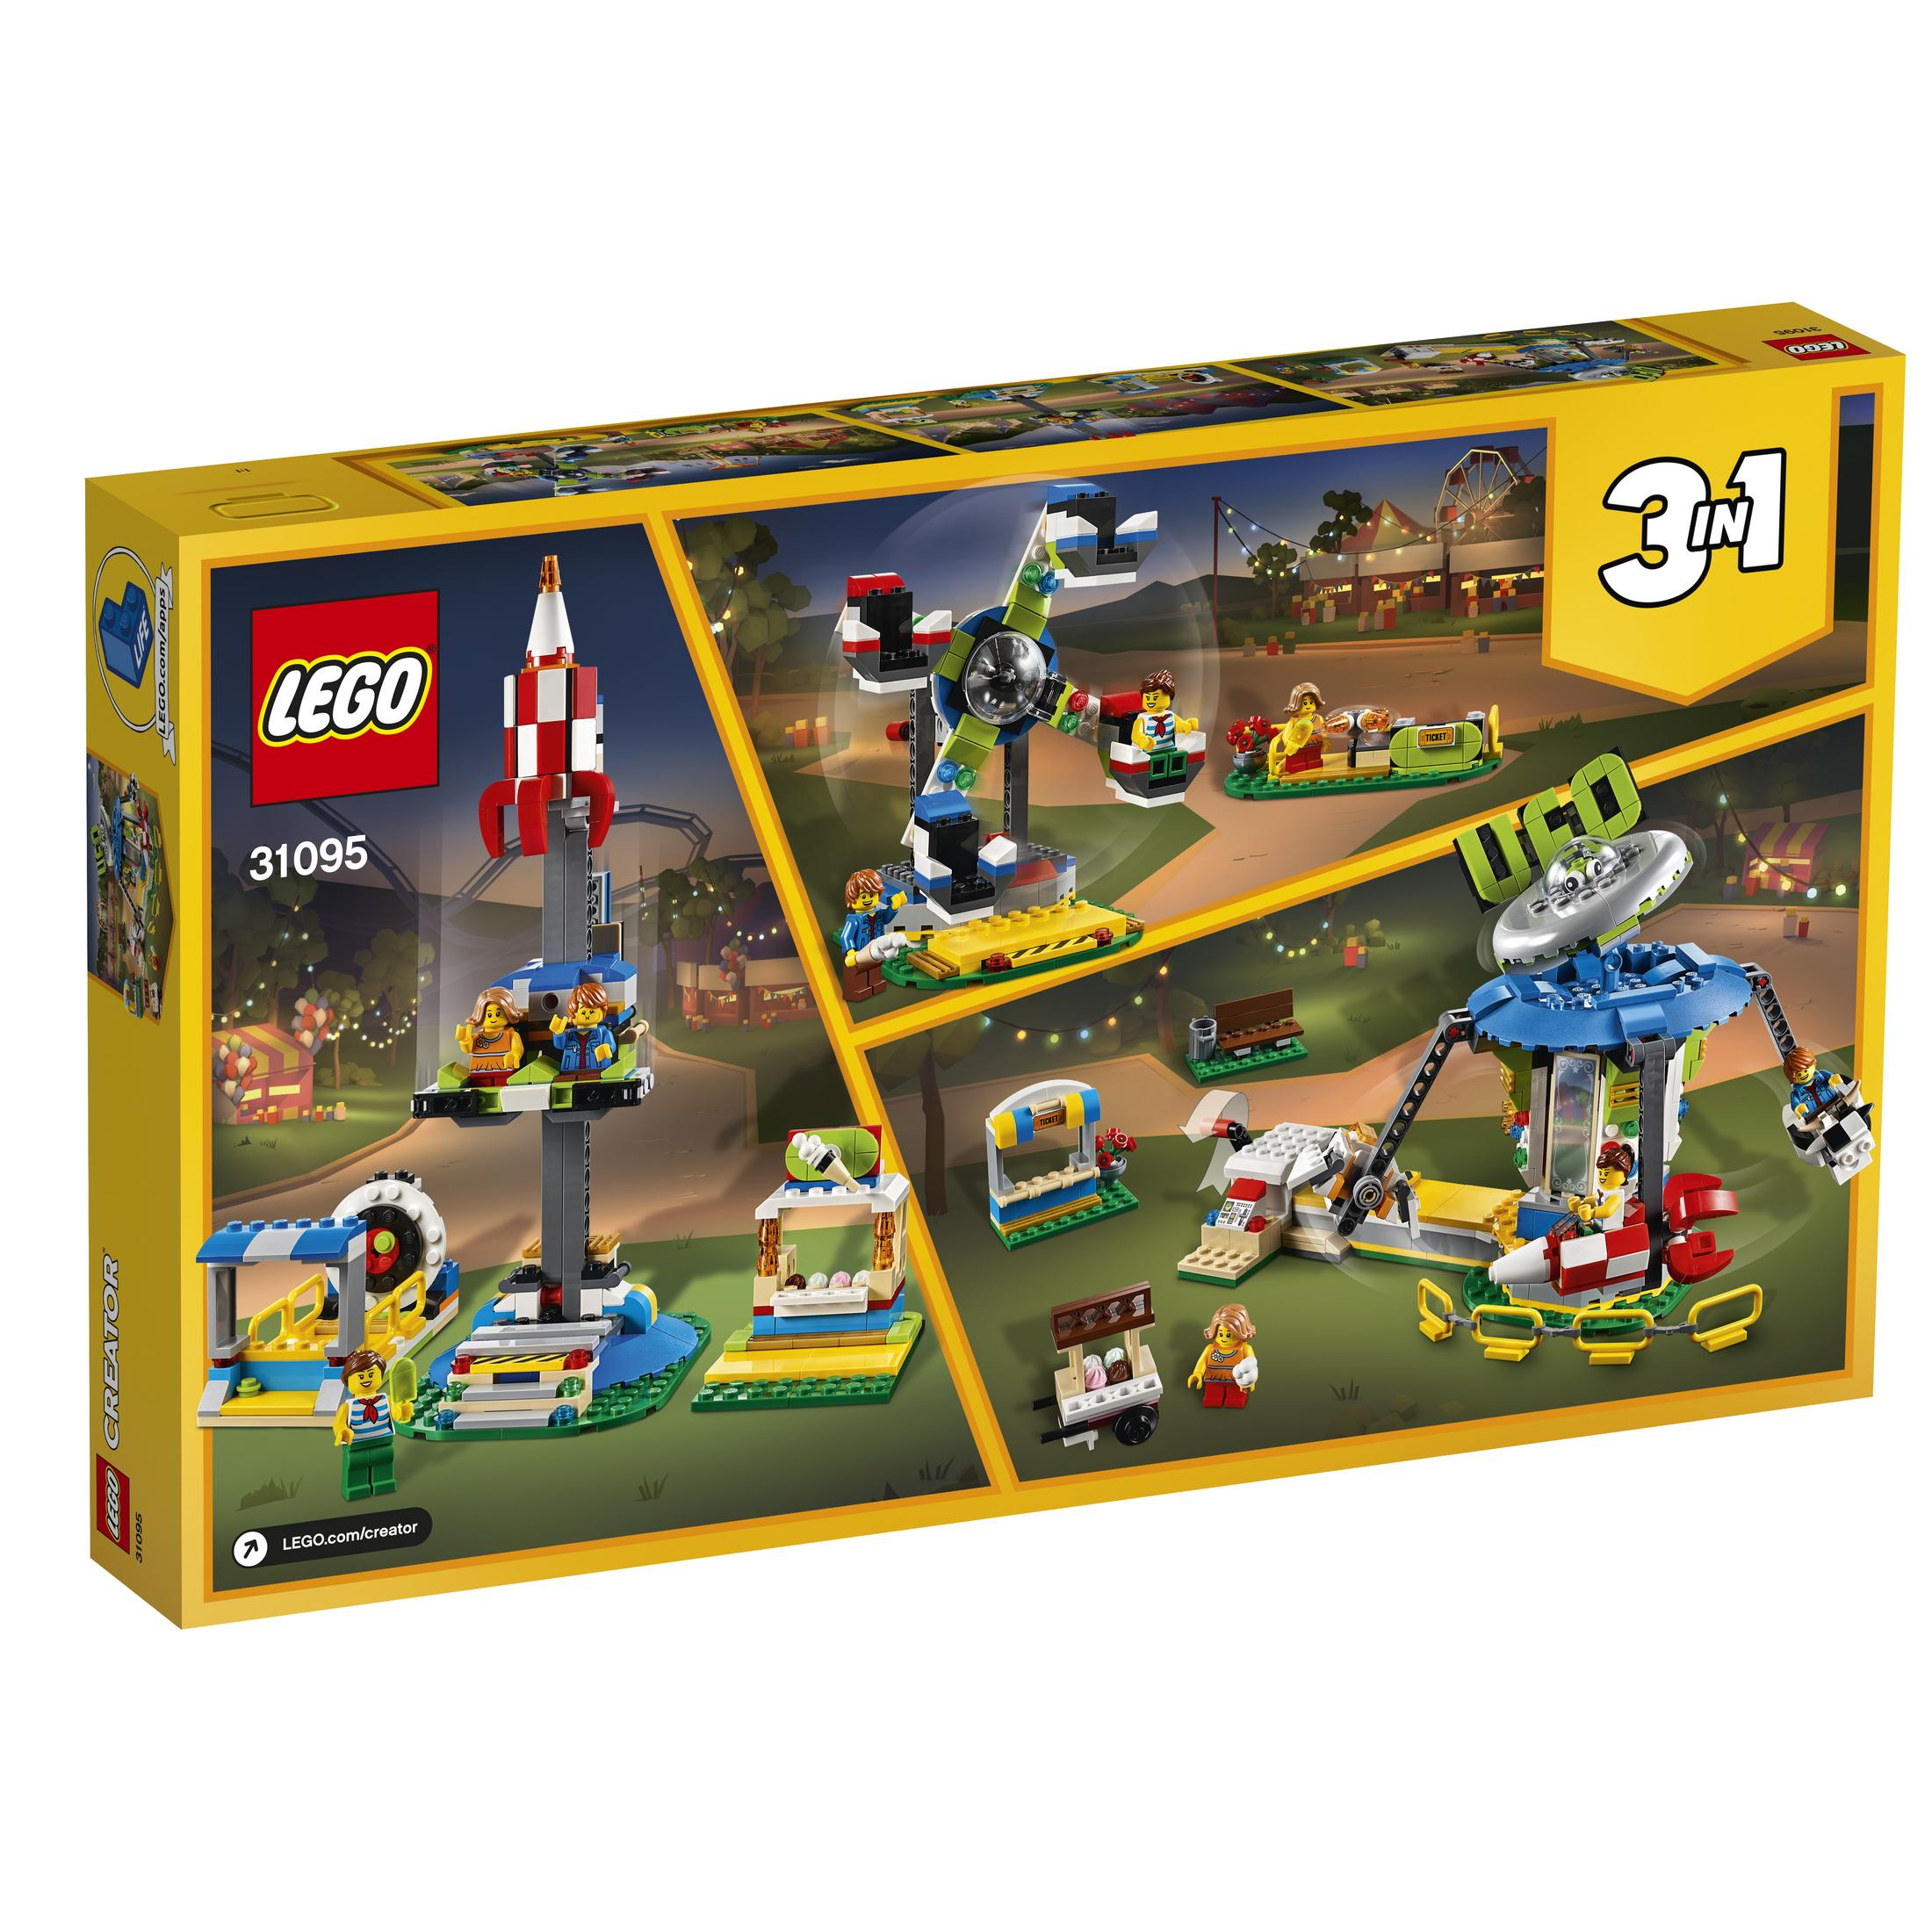 LEGO 31095 JAHRMARKTKARUSSELL Bausatz, Mehrfarbig